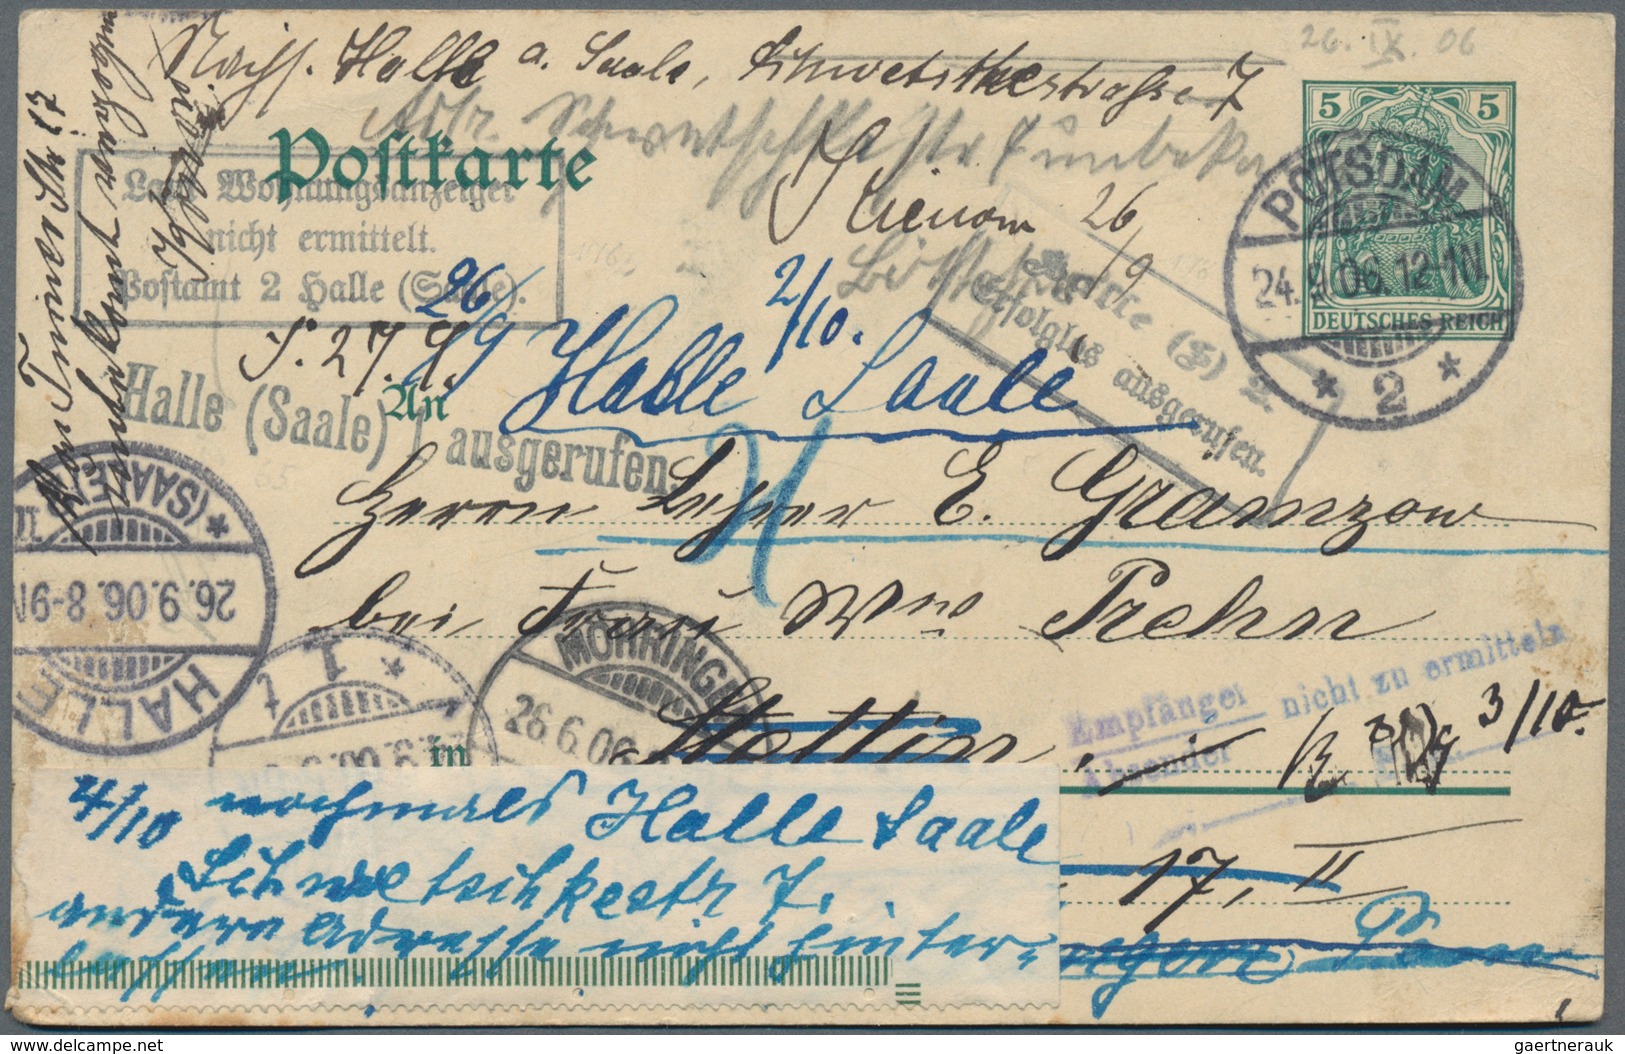 Deutsches Reich: 1875/1940, ca. 140 Belege, überwiegend aus der Zeit 1875 bis 1900, dabei diverse Zu